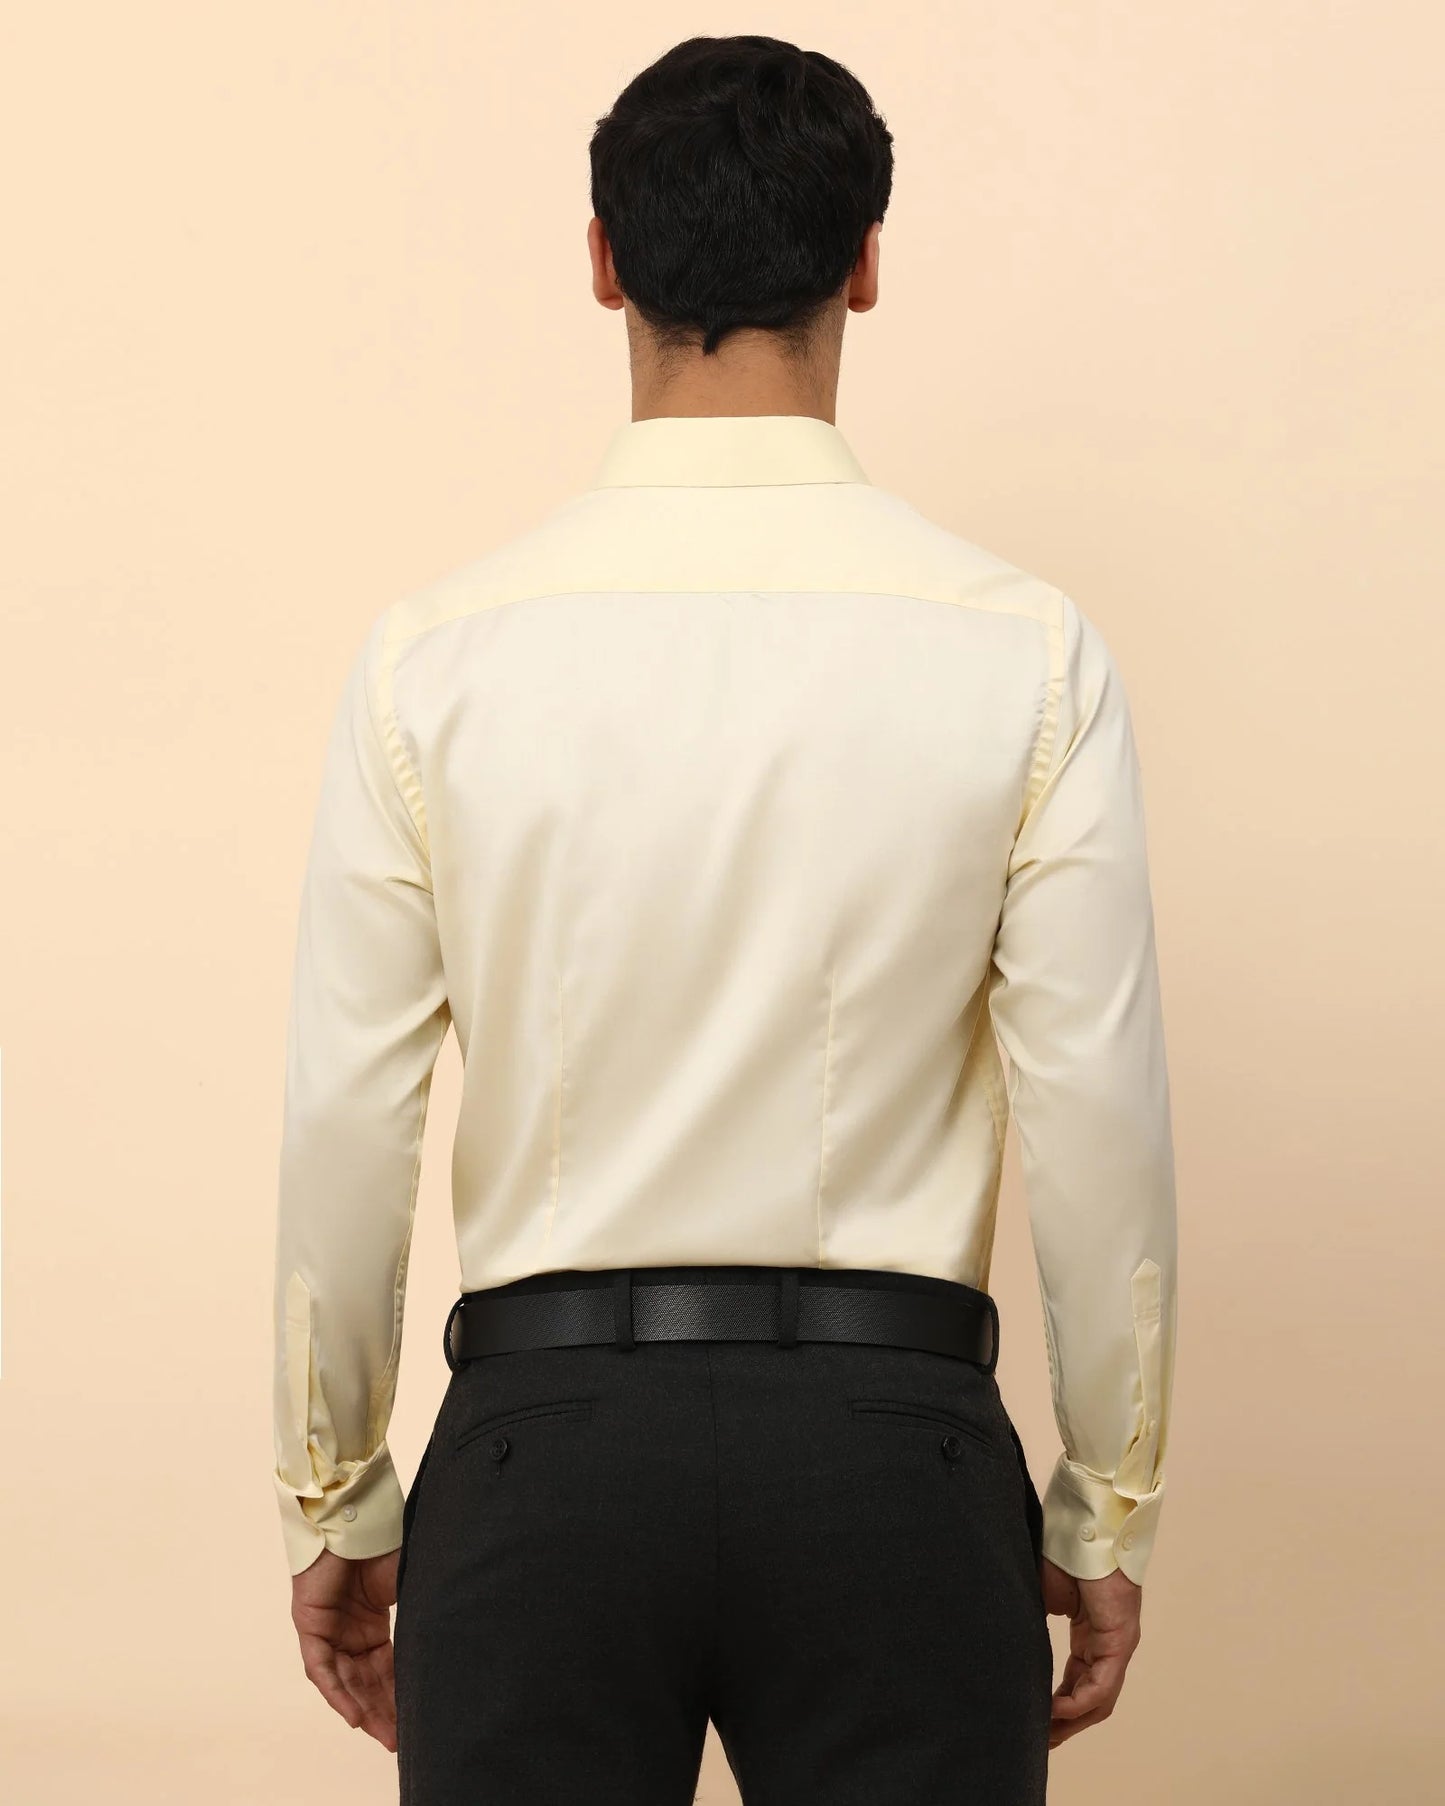 Solid formal shirt in lemon color